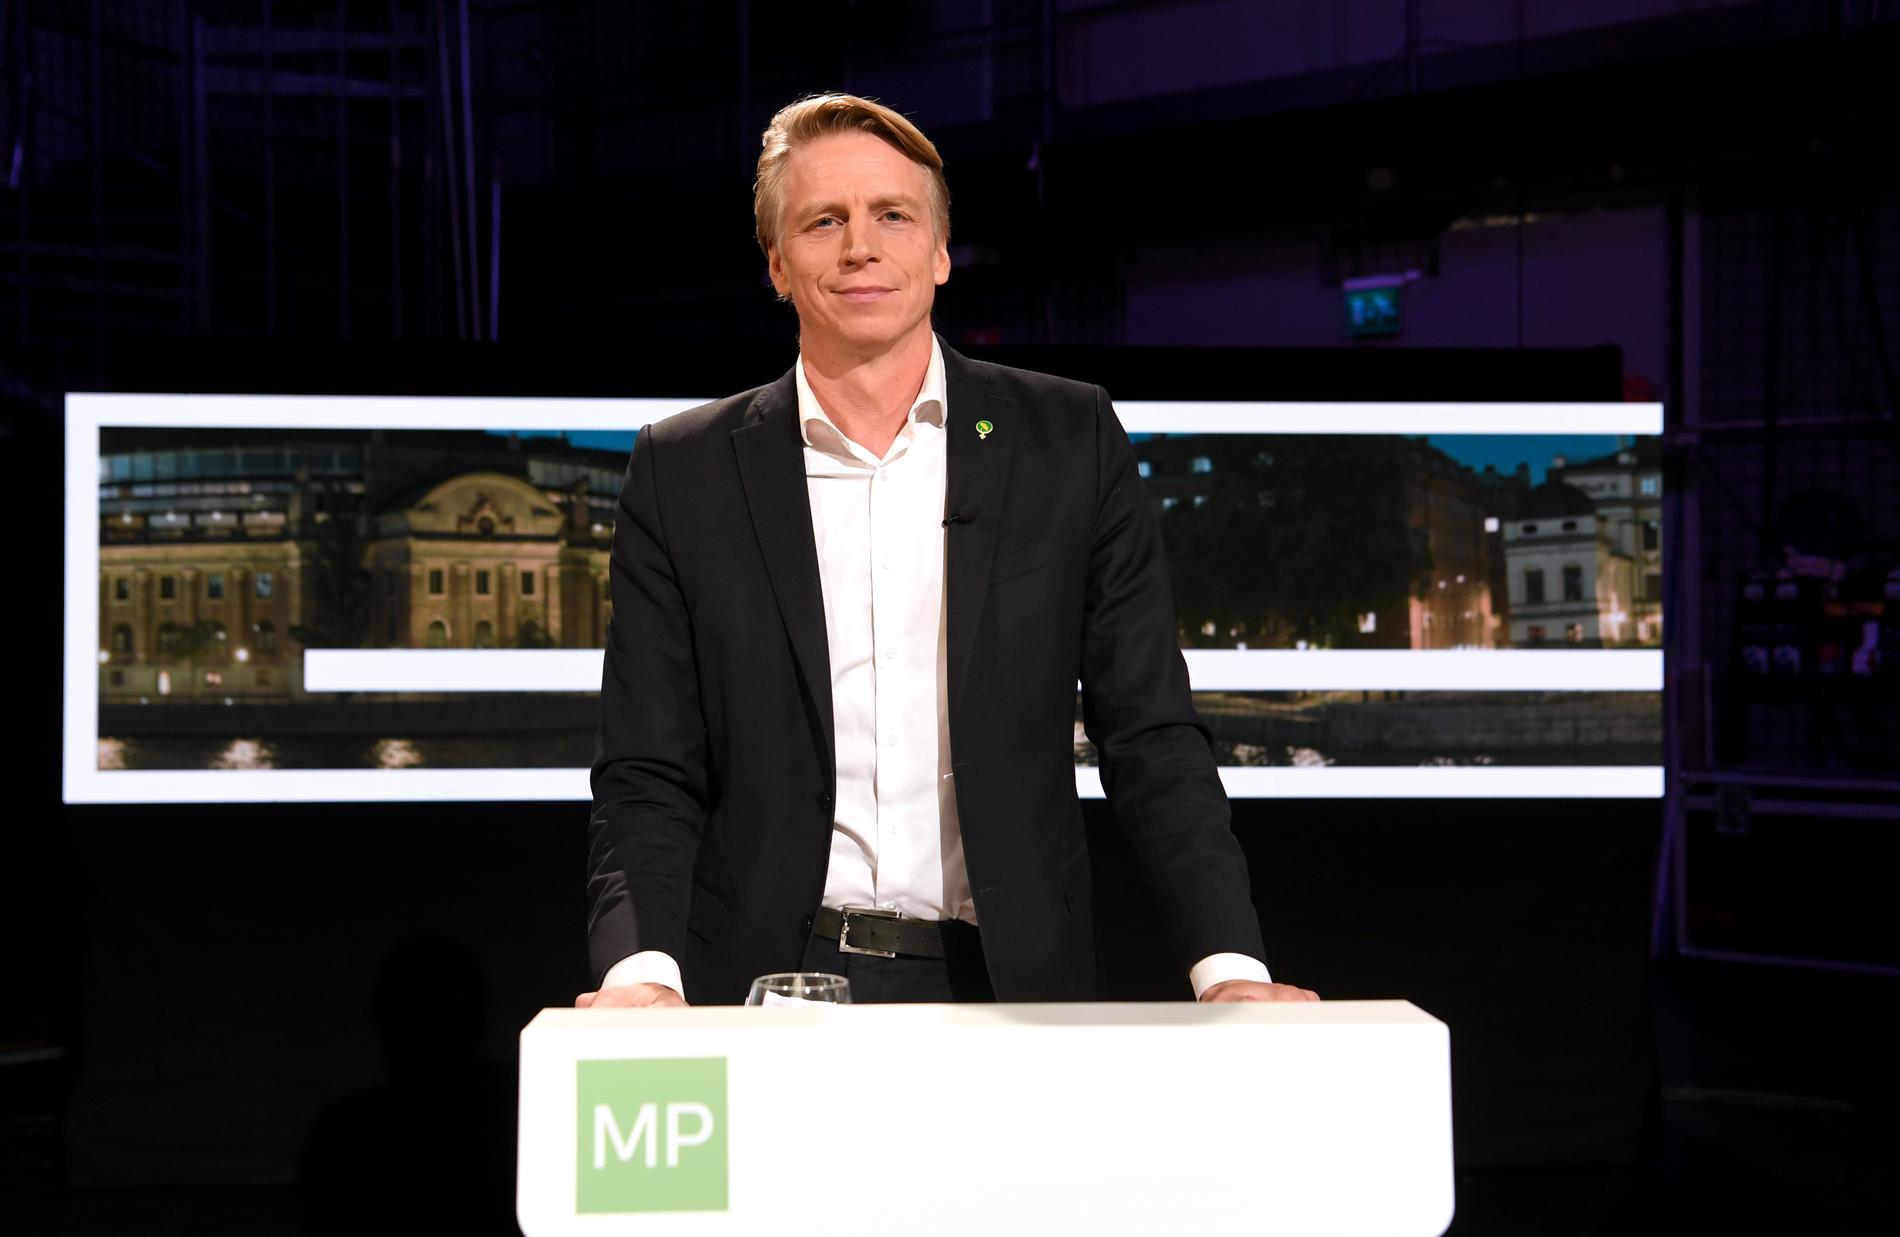 Miljöpartiets språkrör Per Bolund tillbakavisade att han skulle ha kallat Jimmie Åkesson (SD) för nazist.